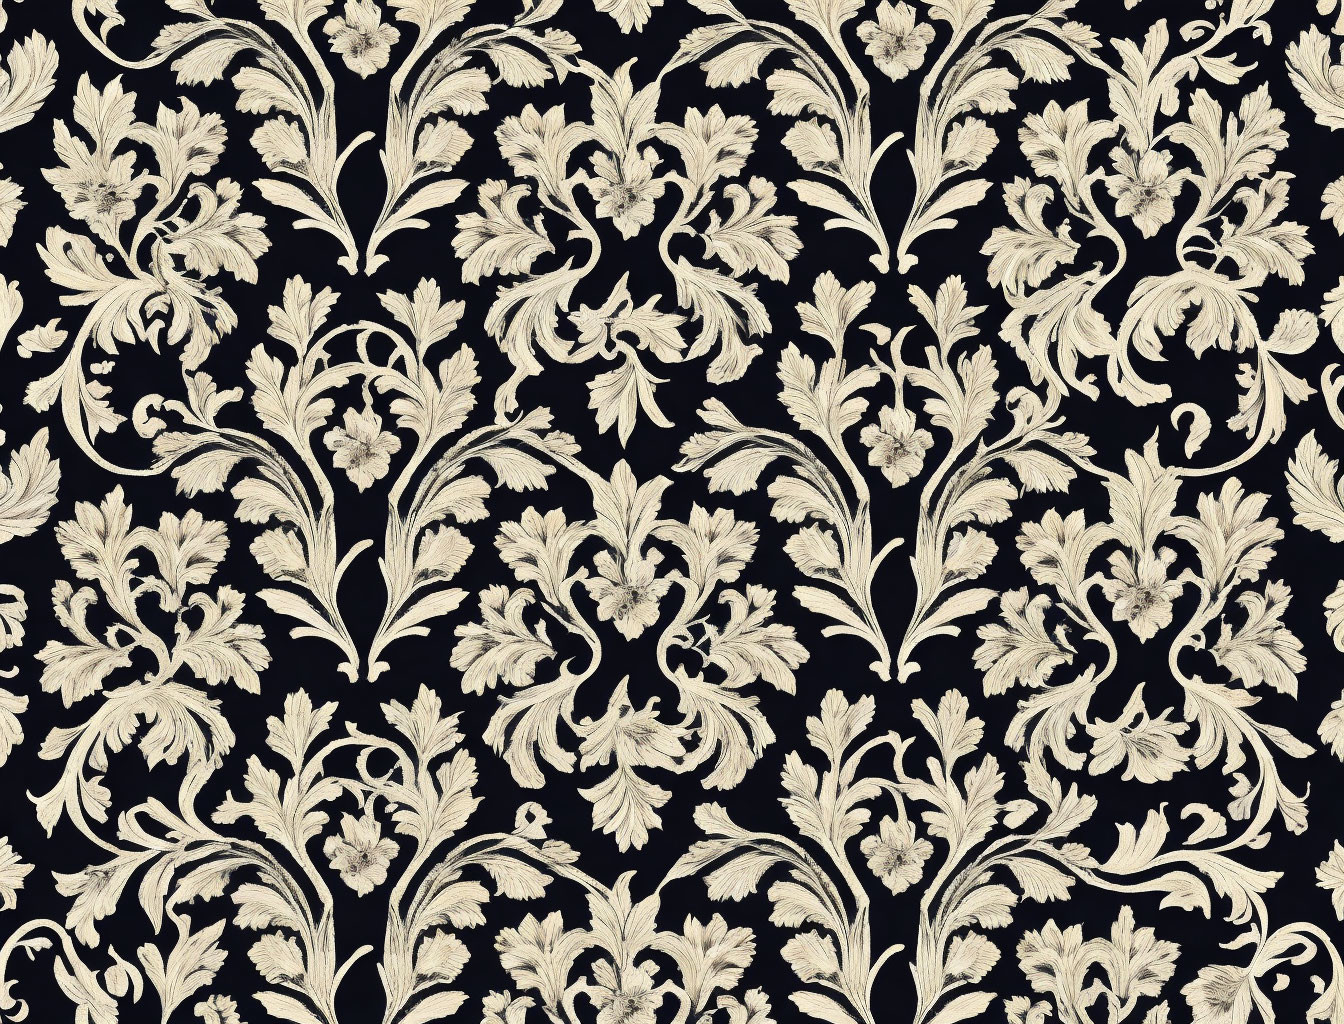 Beige floral motifs on black background: Classic vintage wallpaper design